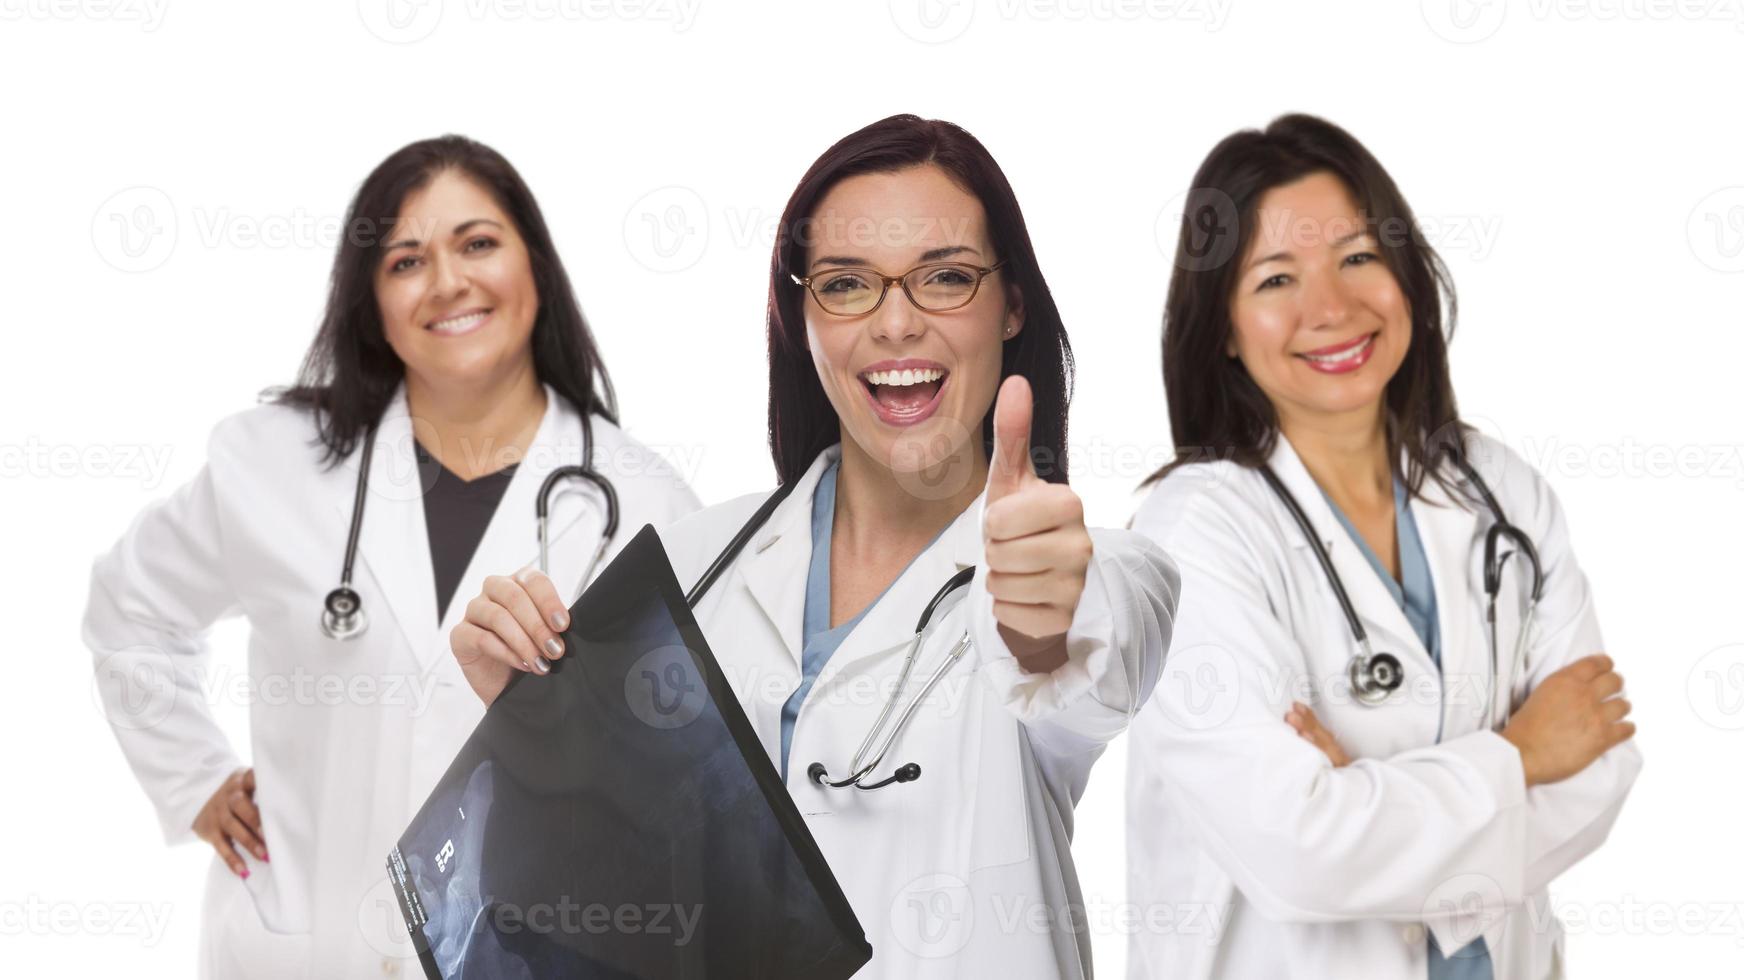 médicas ou enfermeiras hispânicas com polegares para cima segurando raio-x foto